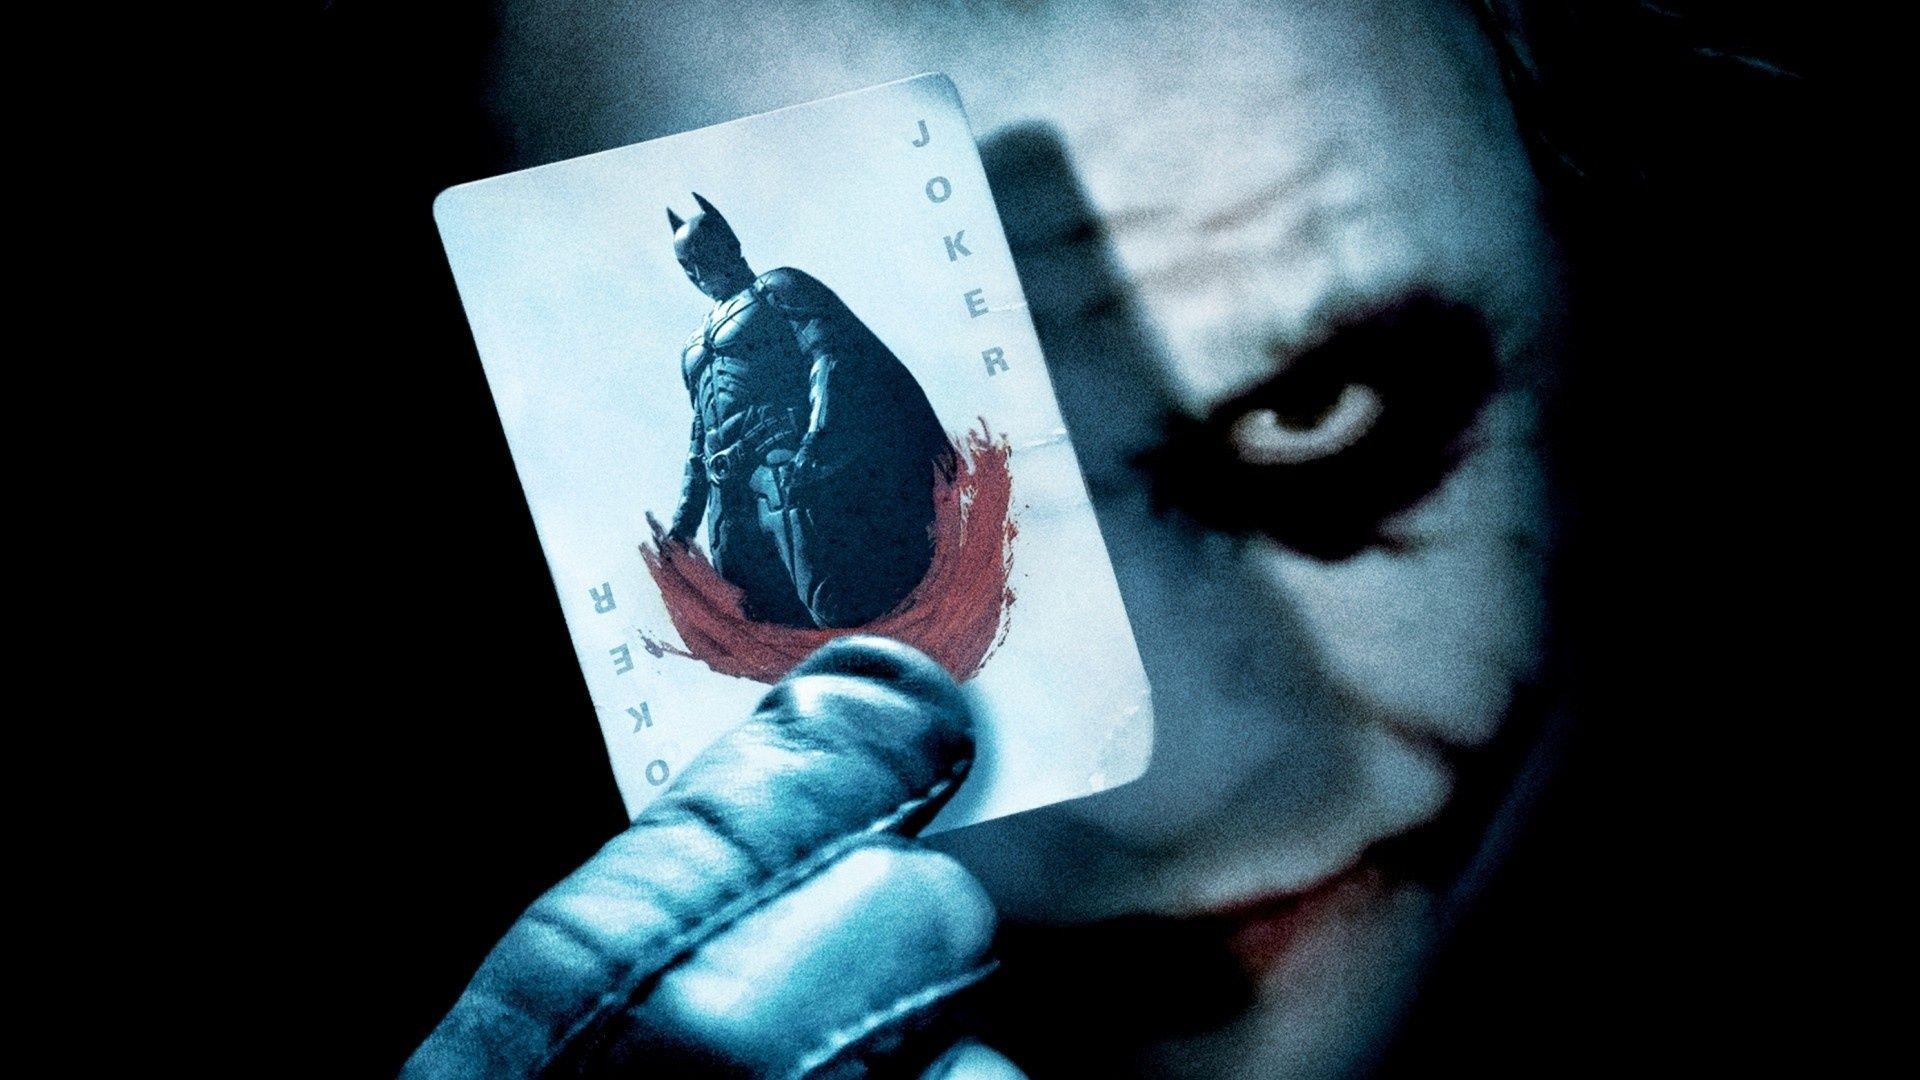 Batman Joker Card Wallpaper in jpg format for free download